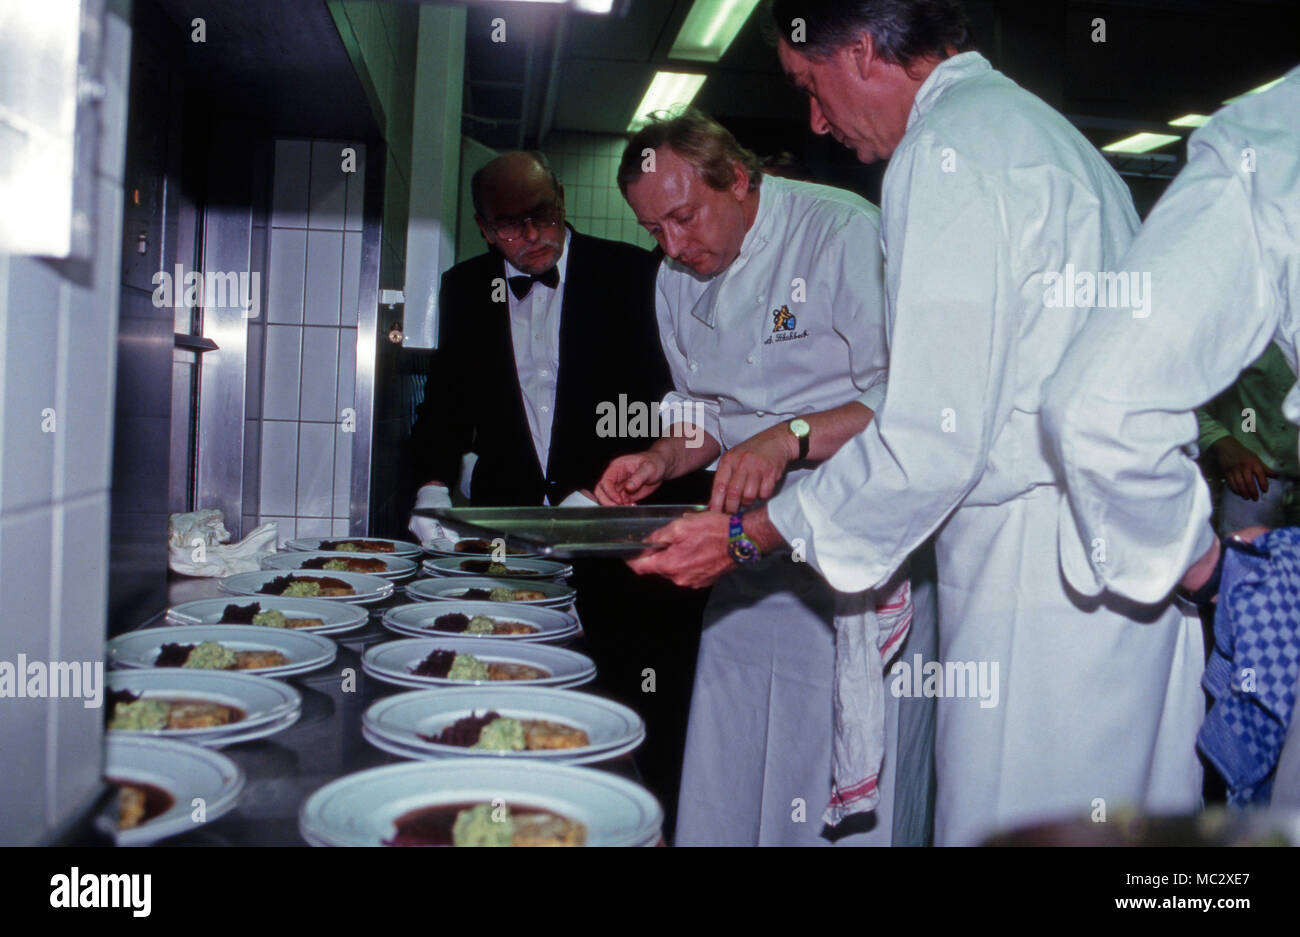 Sternekoch Alfons Schuhbeck kocht bei einem Besuch von Prinz Charles en France, 2004. Alfons Schuhbeck chef cuisiner alors qu'une visite du Prince Charles en Allemagne, 2004. Banque D'Images